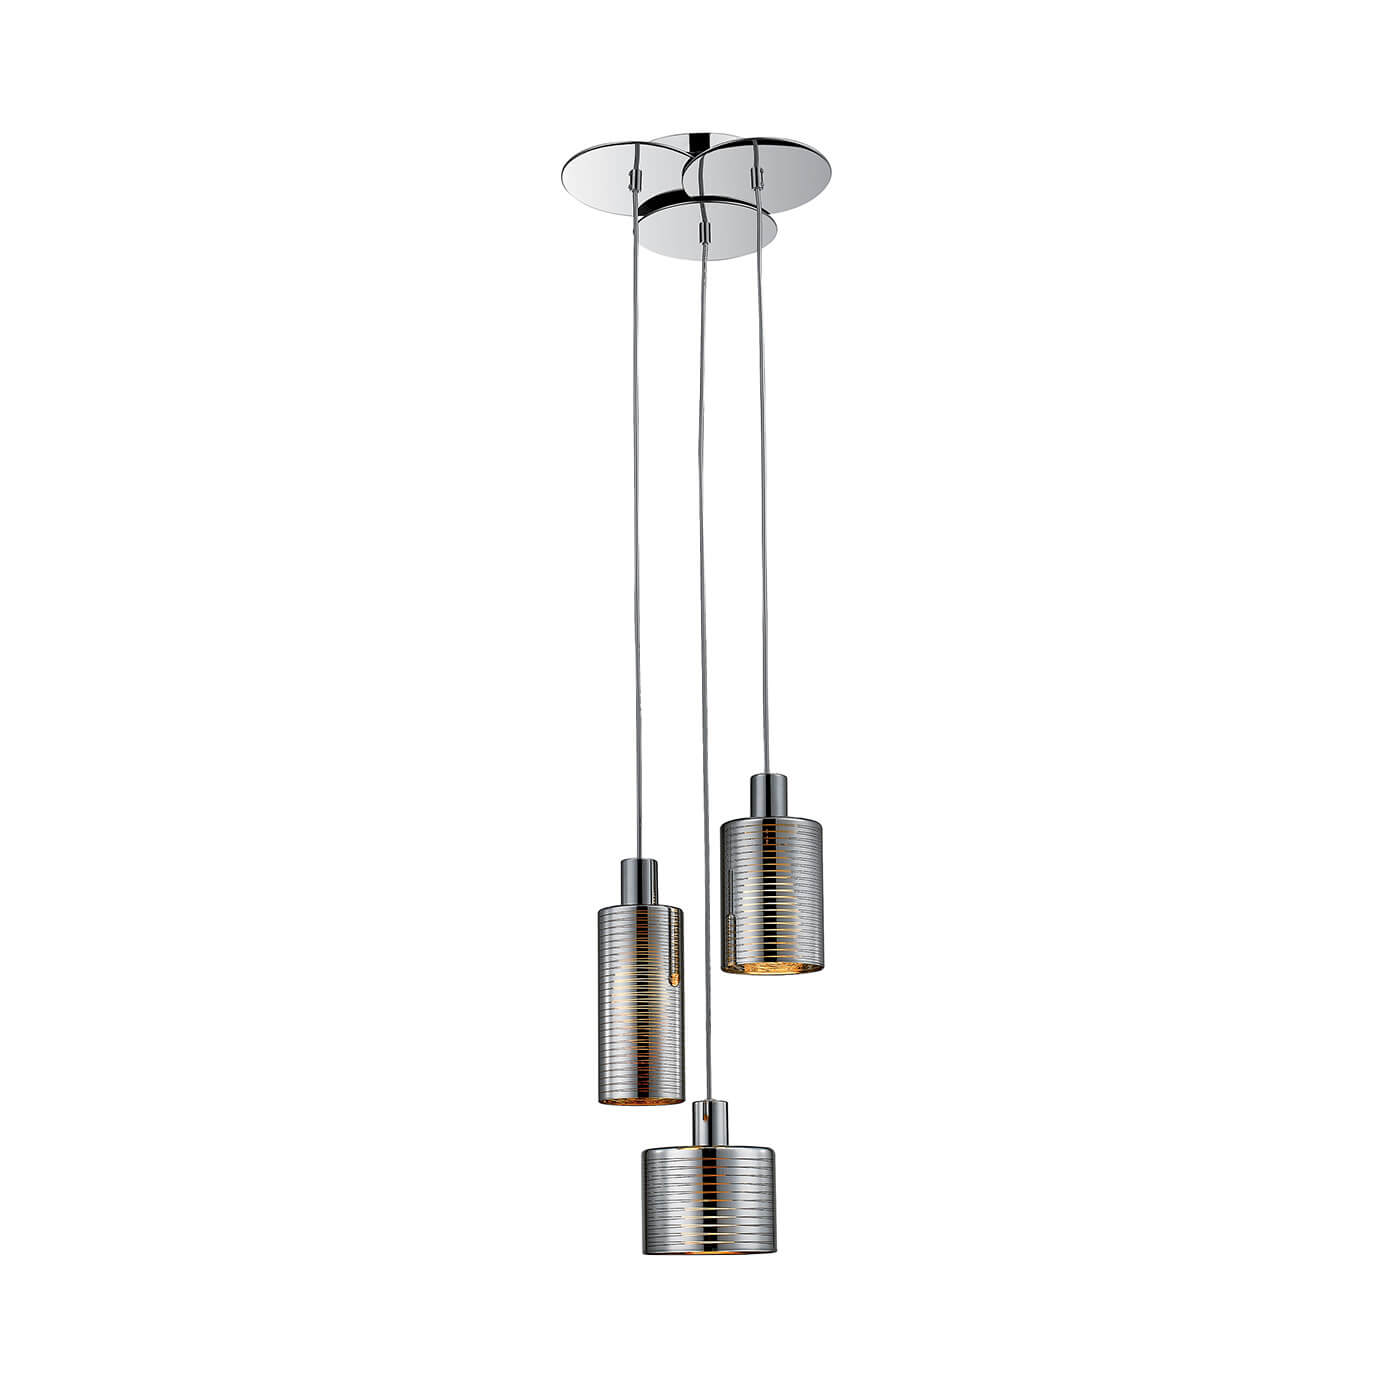 Cauti o lampa suspendata argintie CHARLOTTE S3 din metal, design modern, elegant, pentru living, dining sau dormitor din colectia de lustre si candelabre Domicilio?